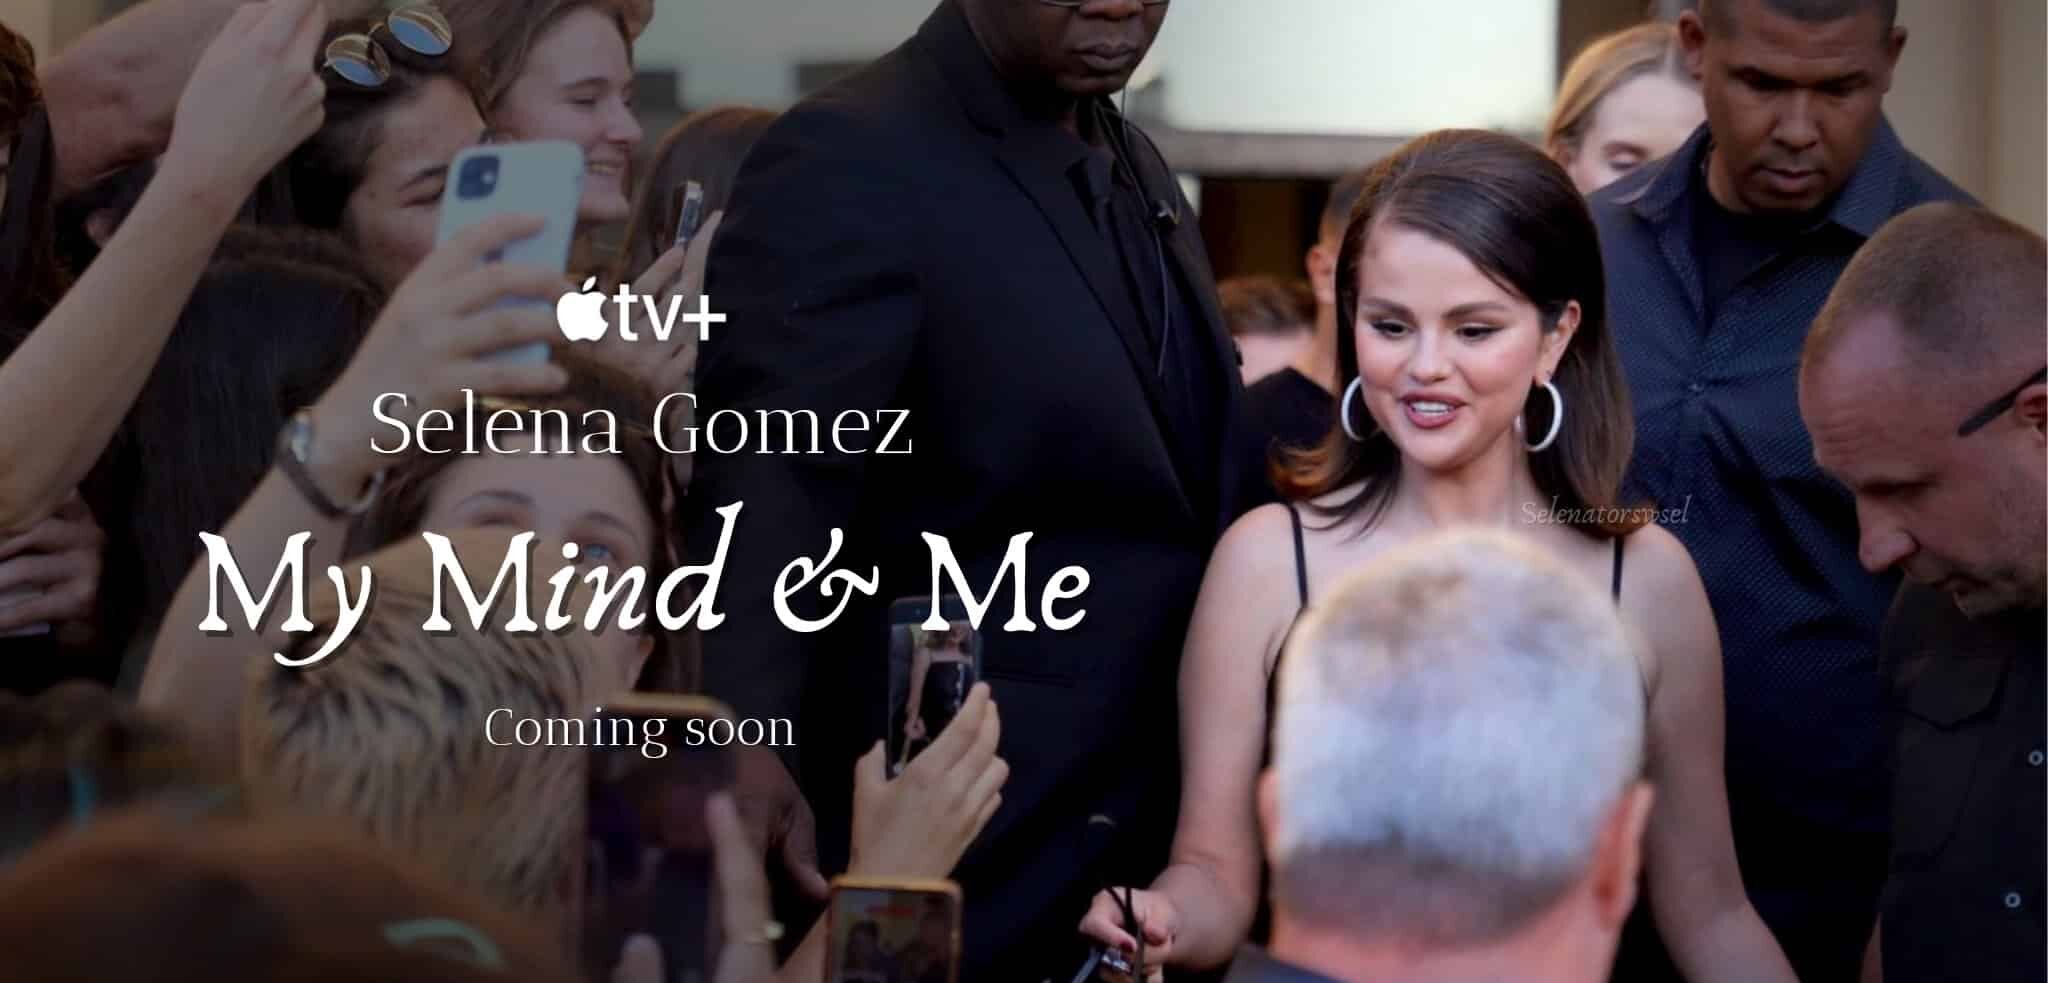 Tout ce que l'on sait sur le documentaire de Selena Gomez en streaming sur Apple TV+ selena gomez e1662709914391